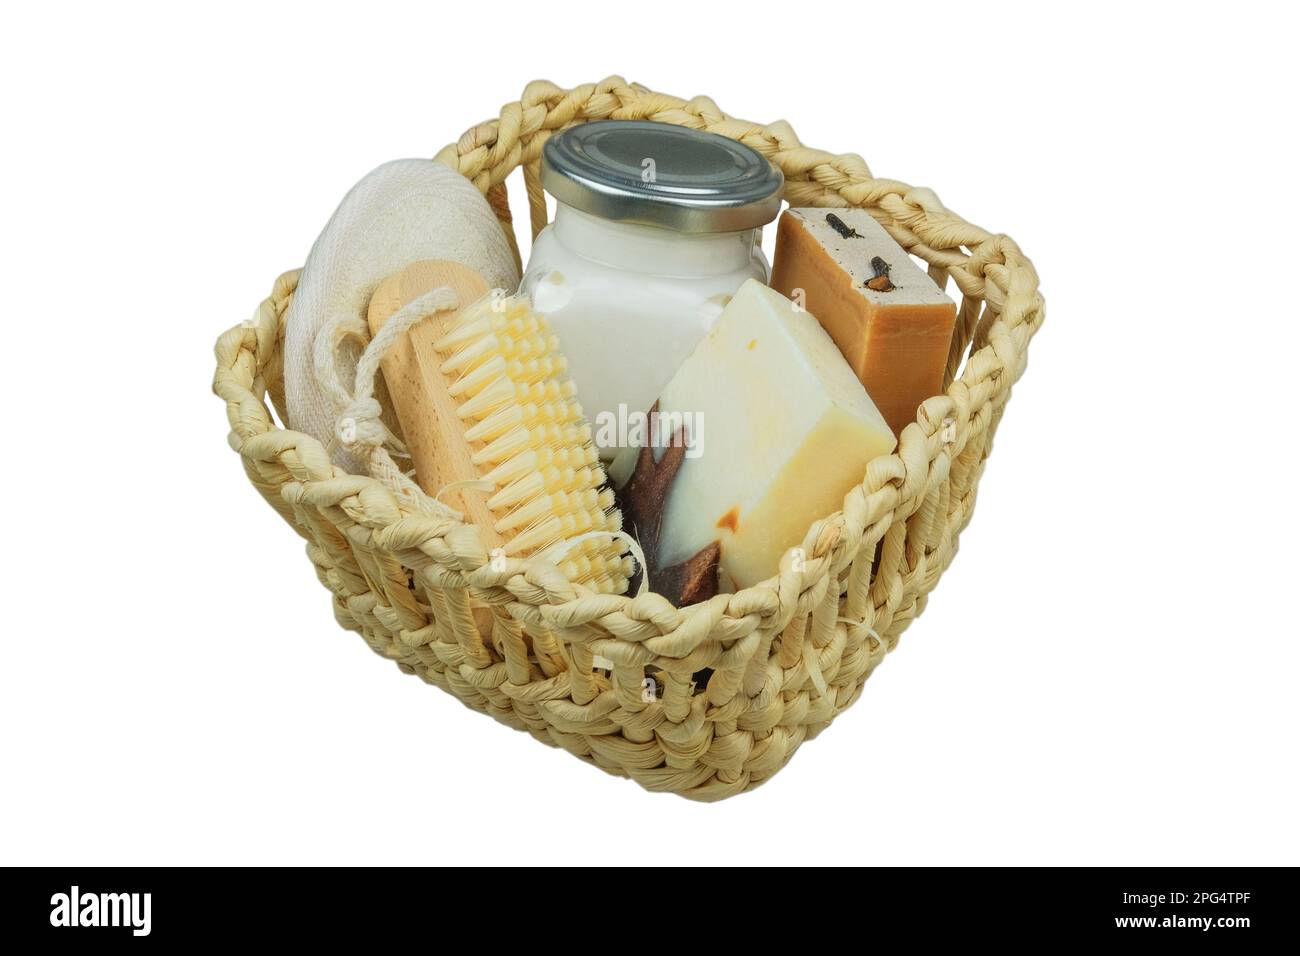 Productos cosméticos de la naturaleza. Productos cosméticos para el cuerpo y accesorios en una cesta de paja blanca. Aislar sobre fondo blanco. Foto de stock